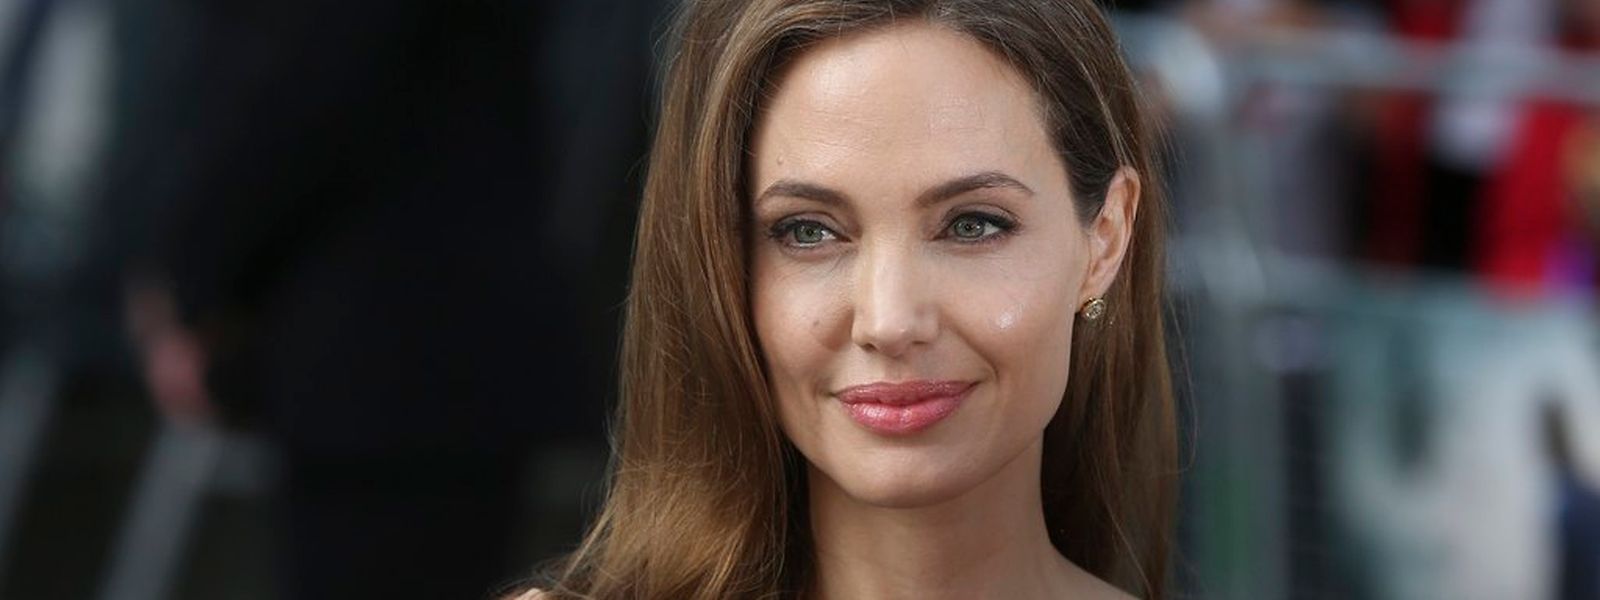 Mitte Januar kommt Angelina Jolies zweite Regiearbeit auf die Leinwand.